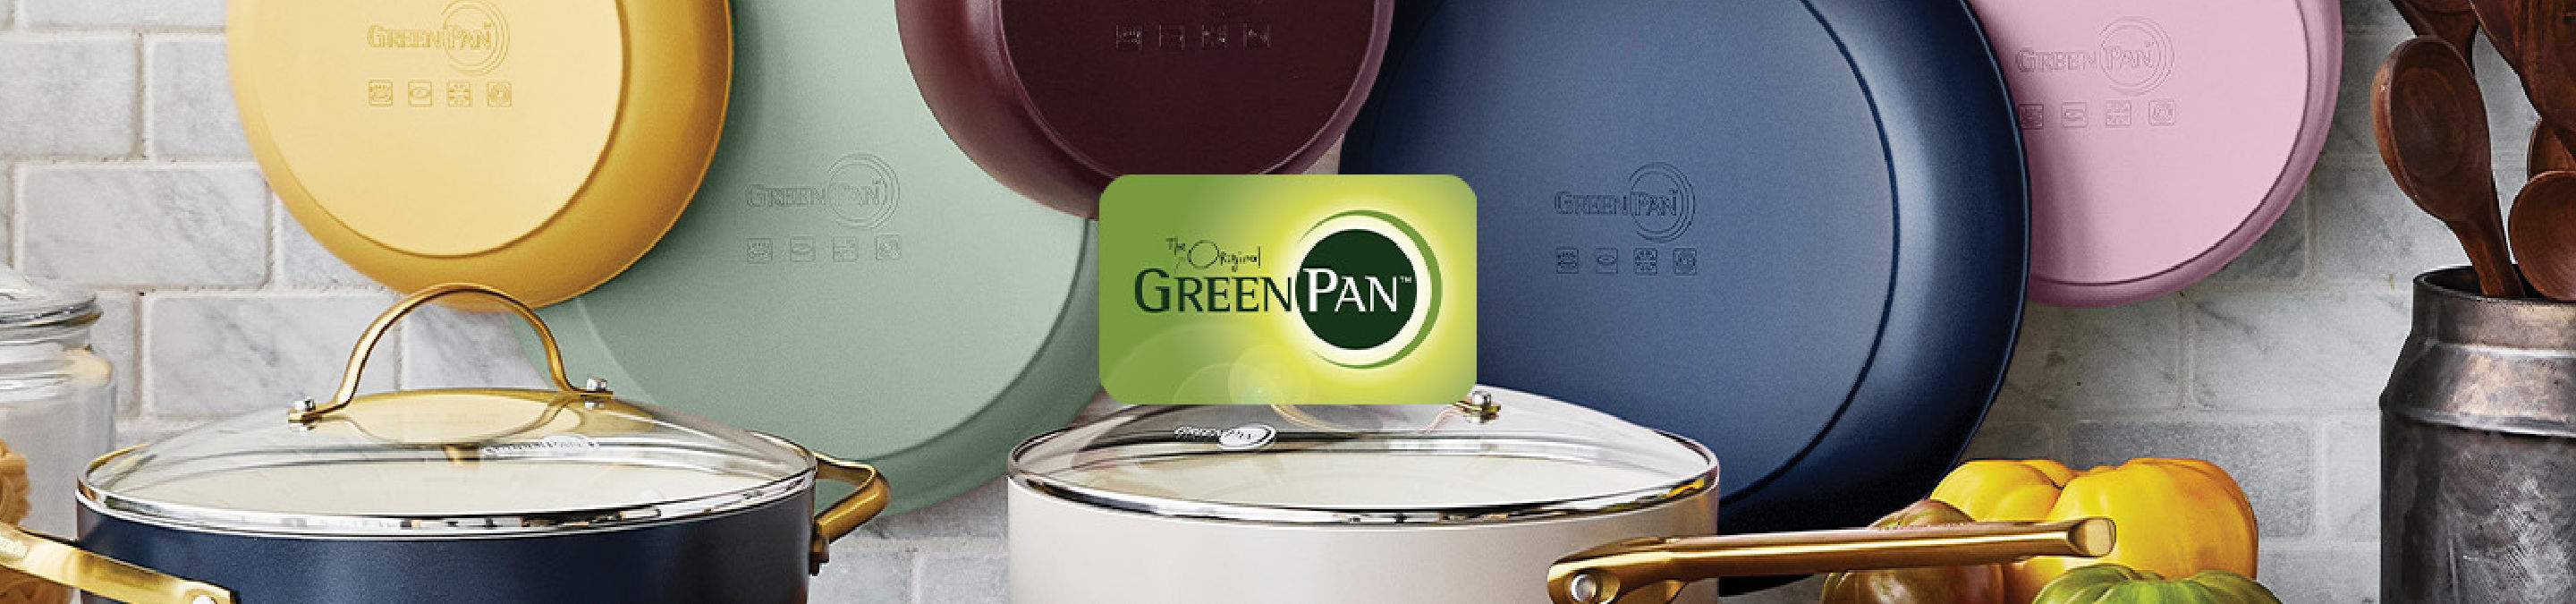 Greenpan Brand Shop